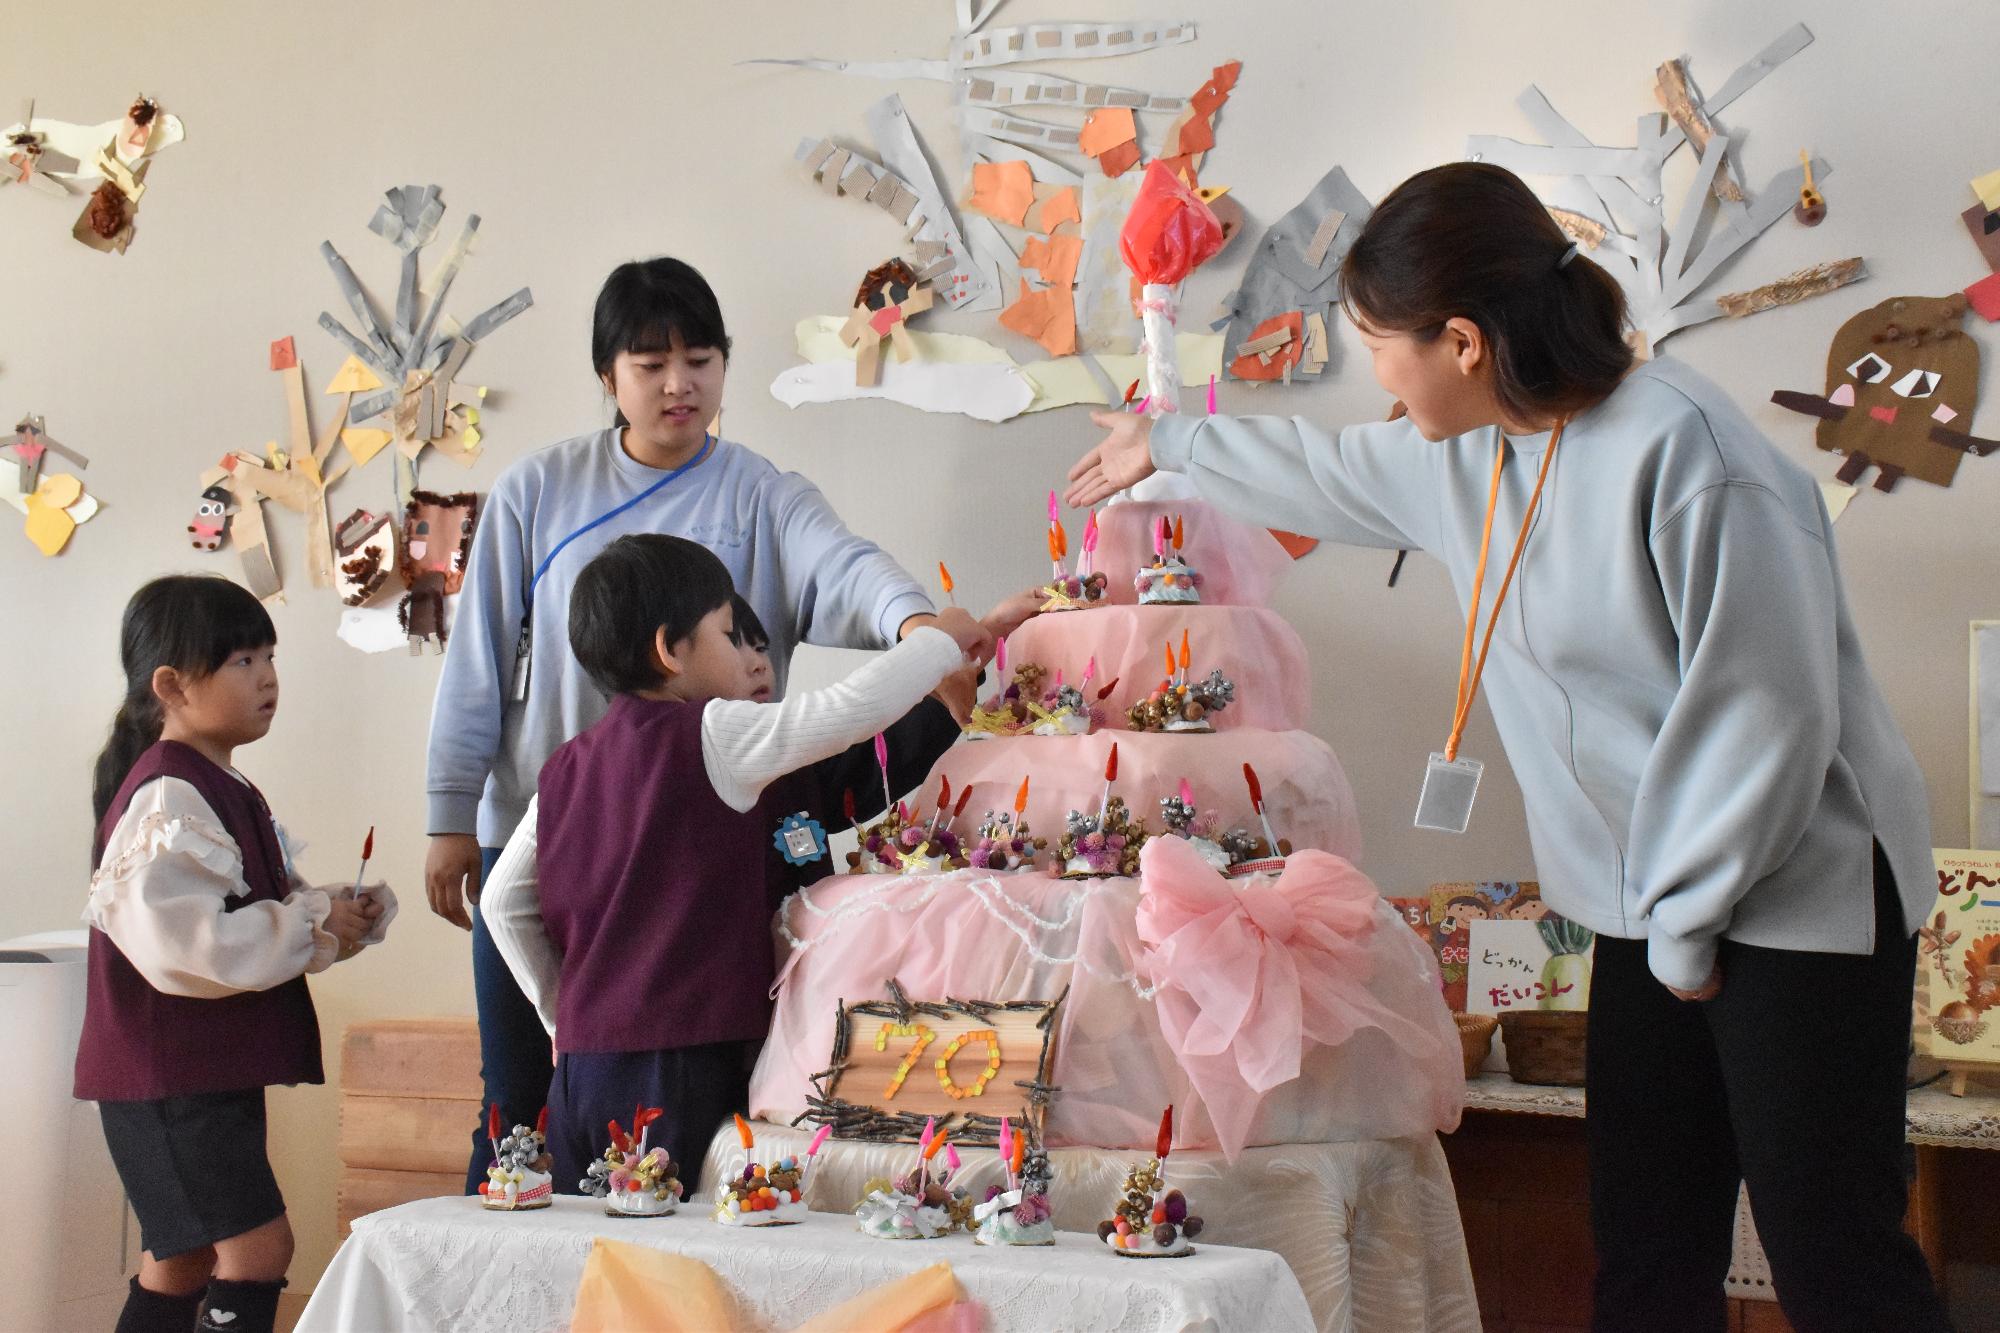 筒井幼稚園にて園児が手作りのケーキにローソクをたてる様子